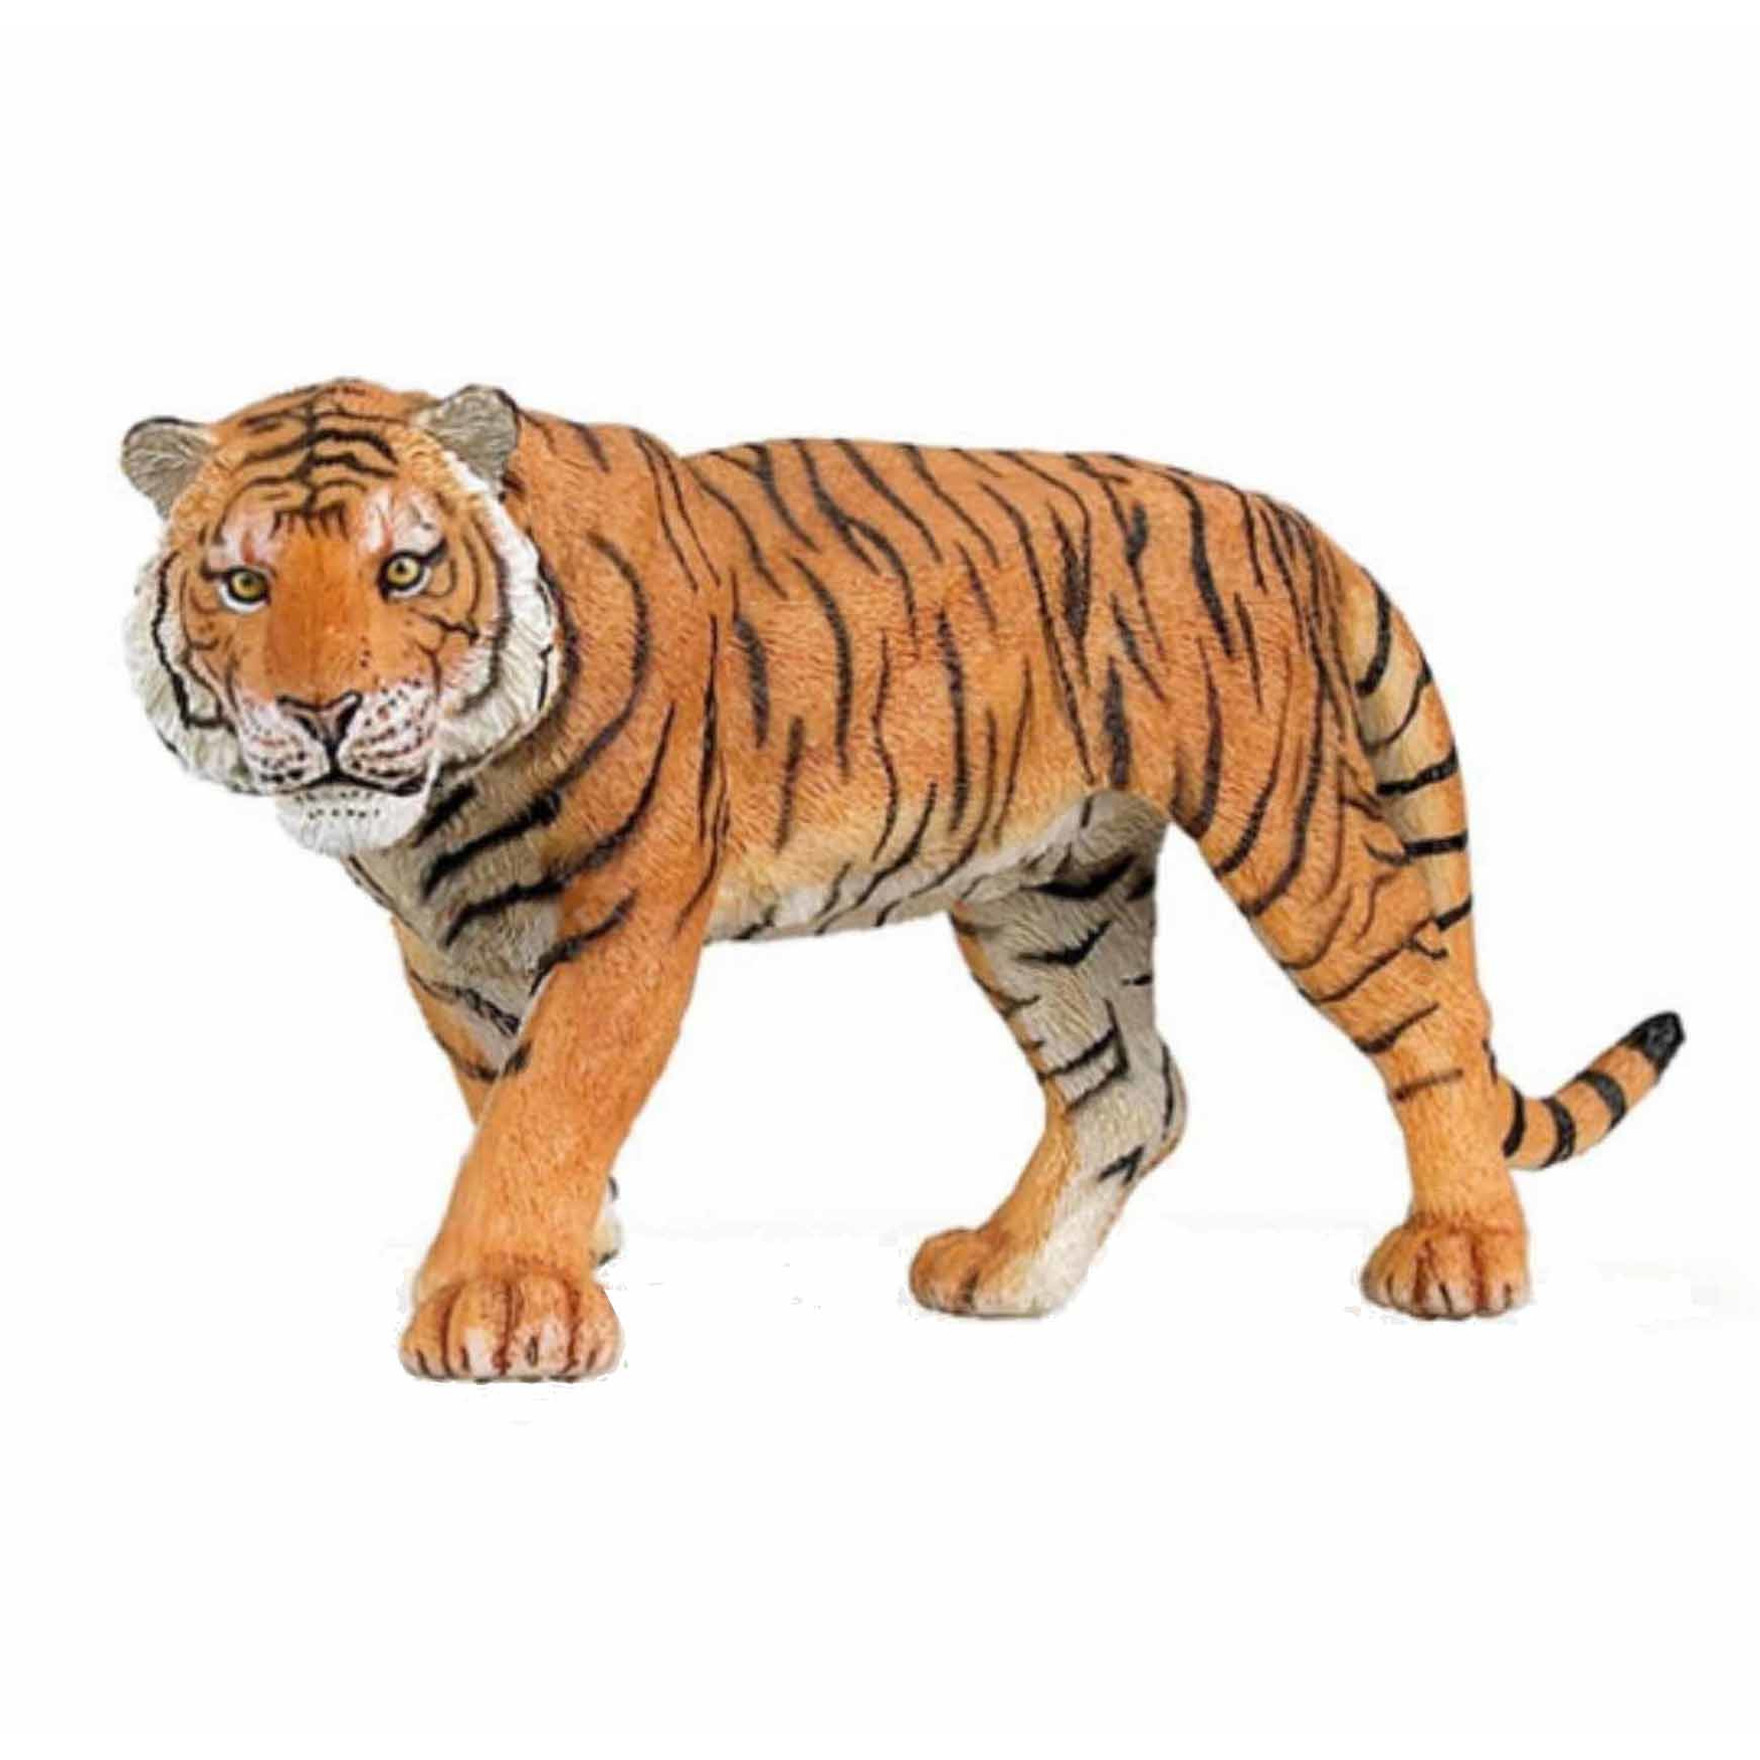 Plastic speelgoed figuur tijger 15 cm